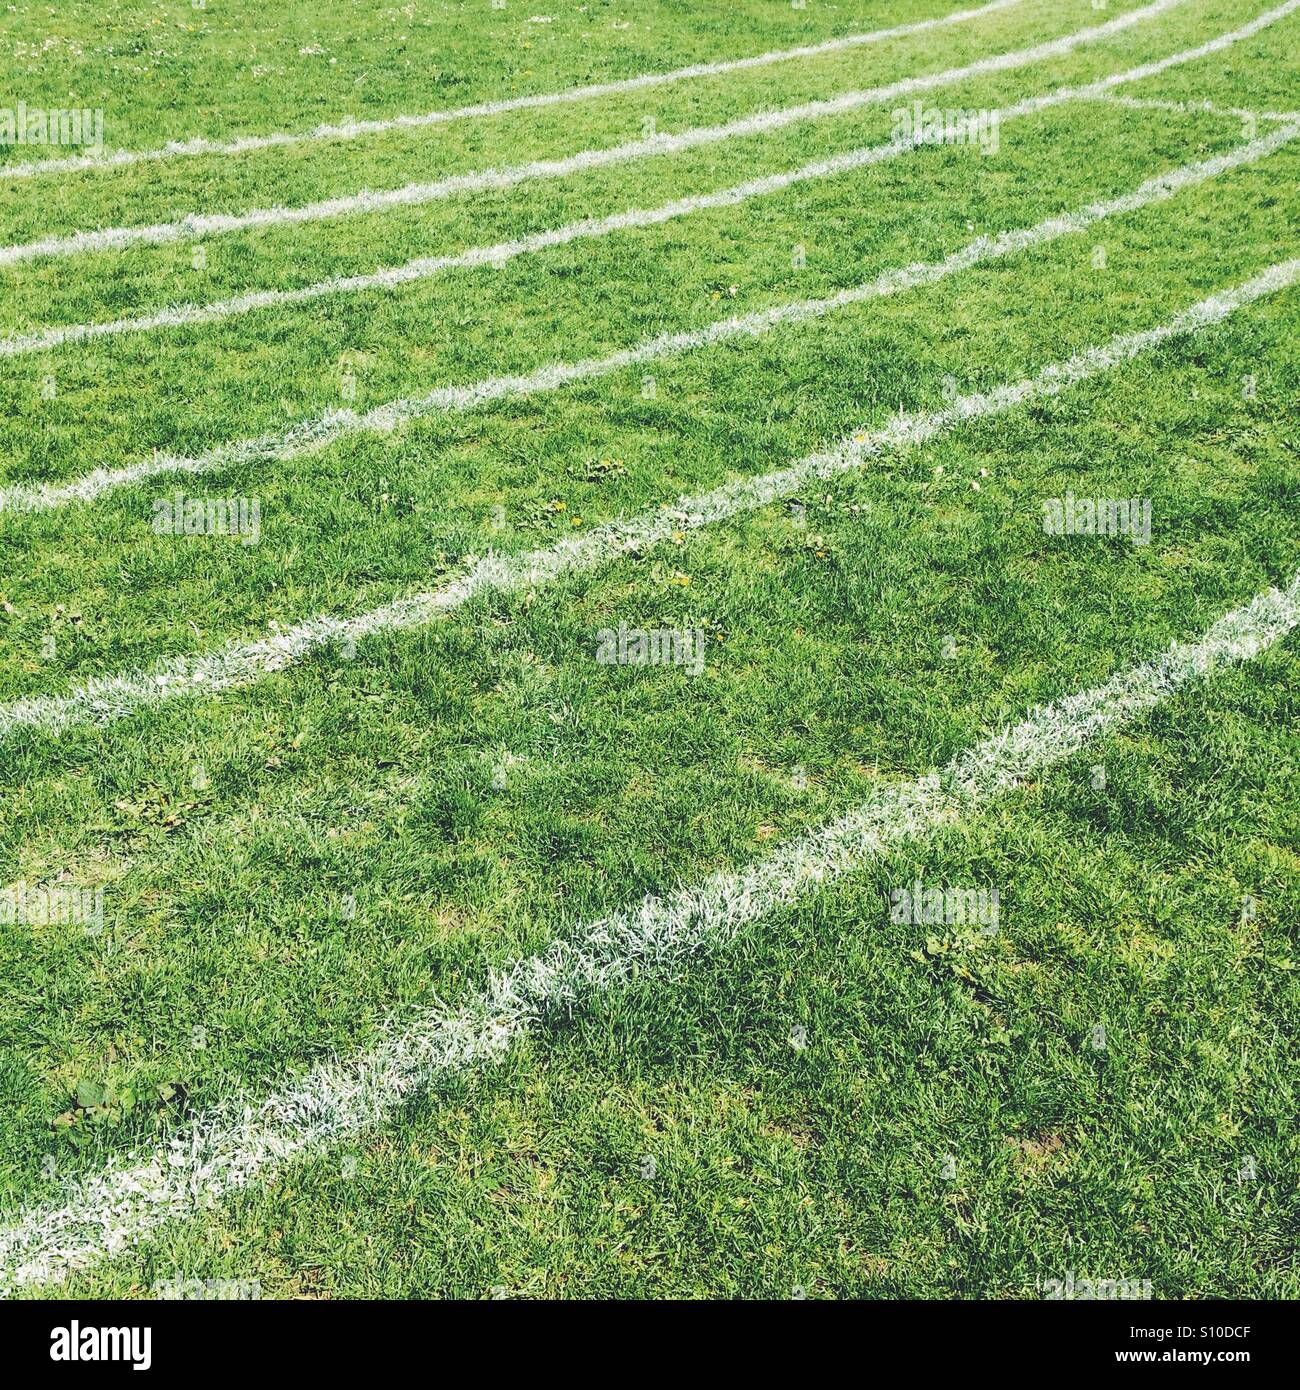 Líneas blancas en un campo deportivo de césped Foto de stock